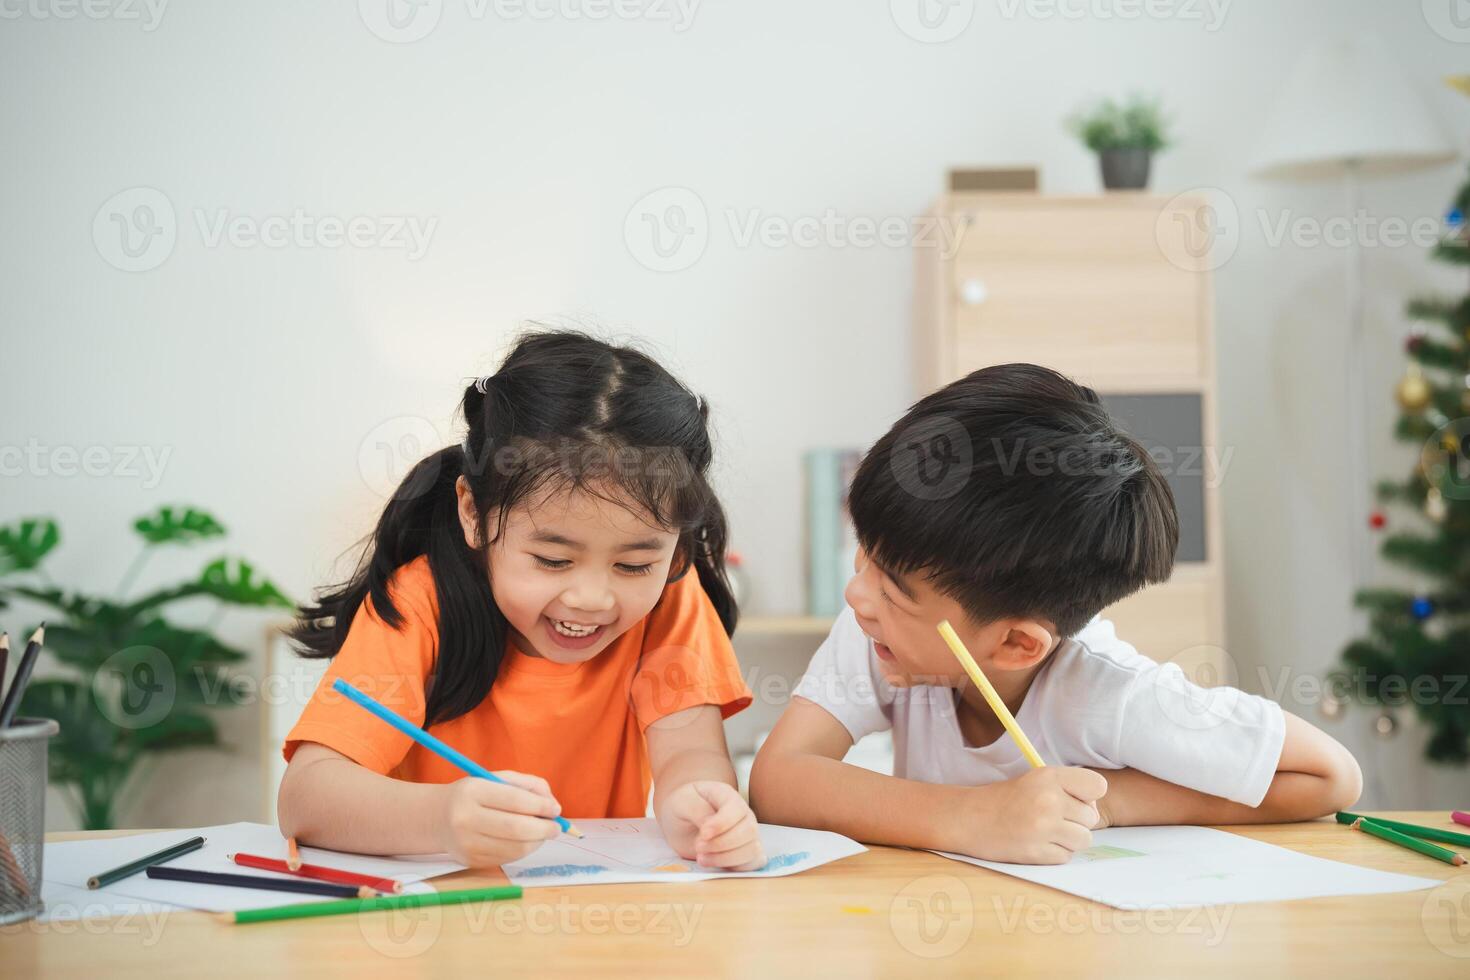 två barn är Sammanträde på en tabell, teckning och leende. begrepp av glädje och kreativitet, som de barn är engagerad i en roligt aktivitet tillsammans foto